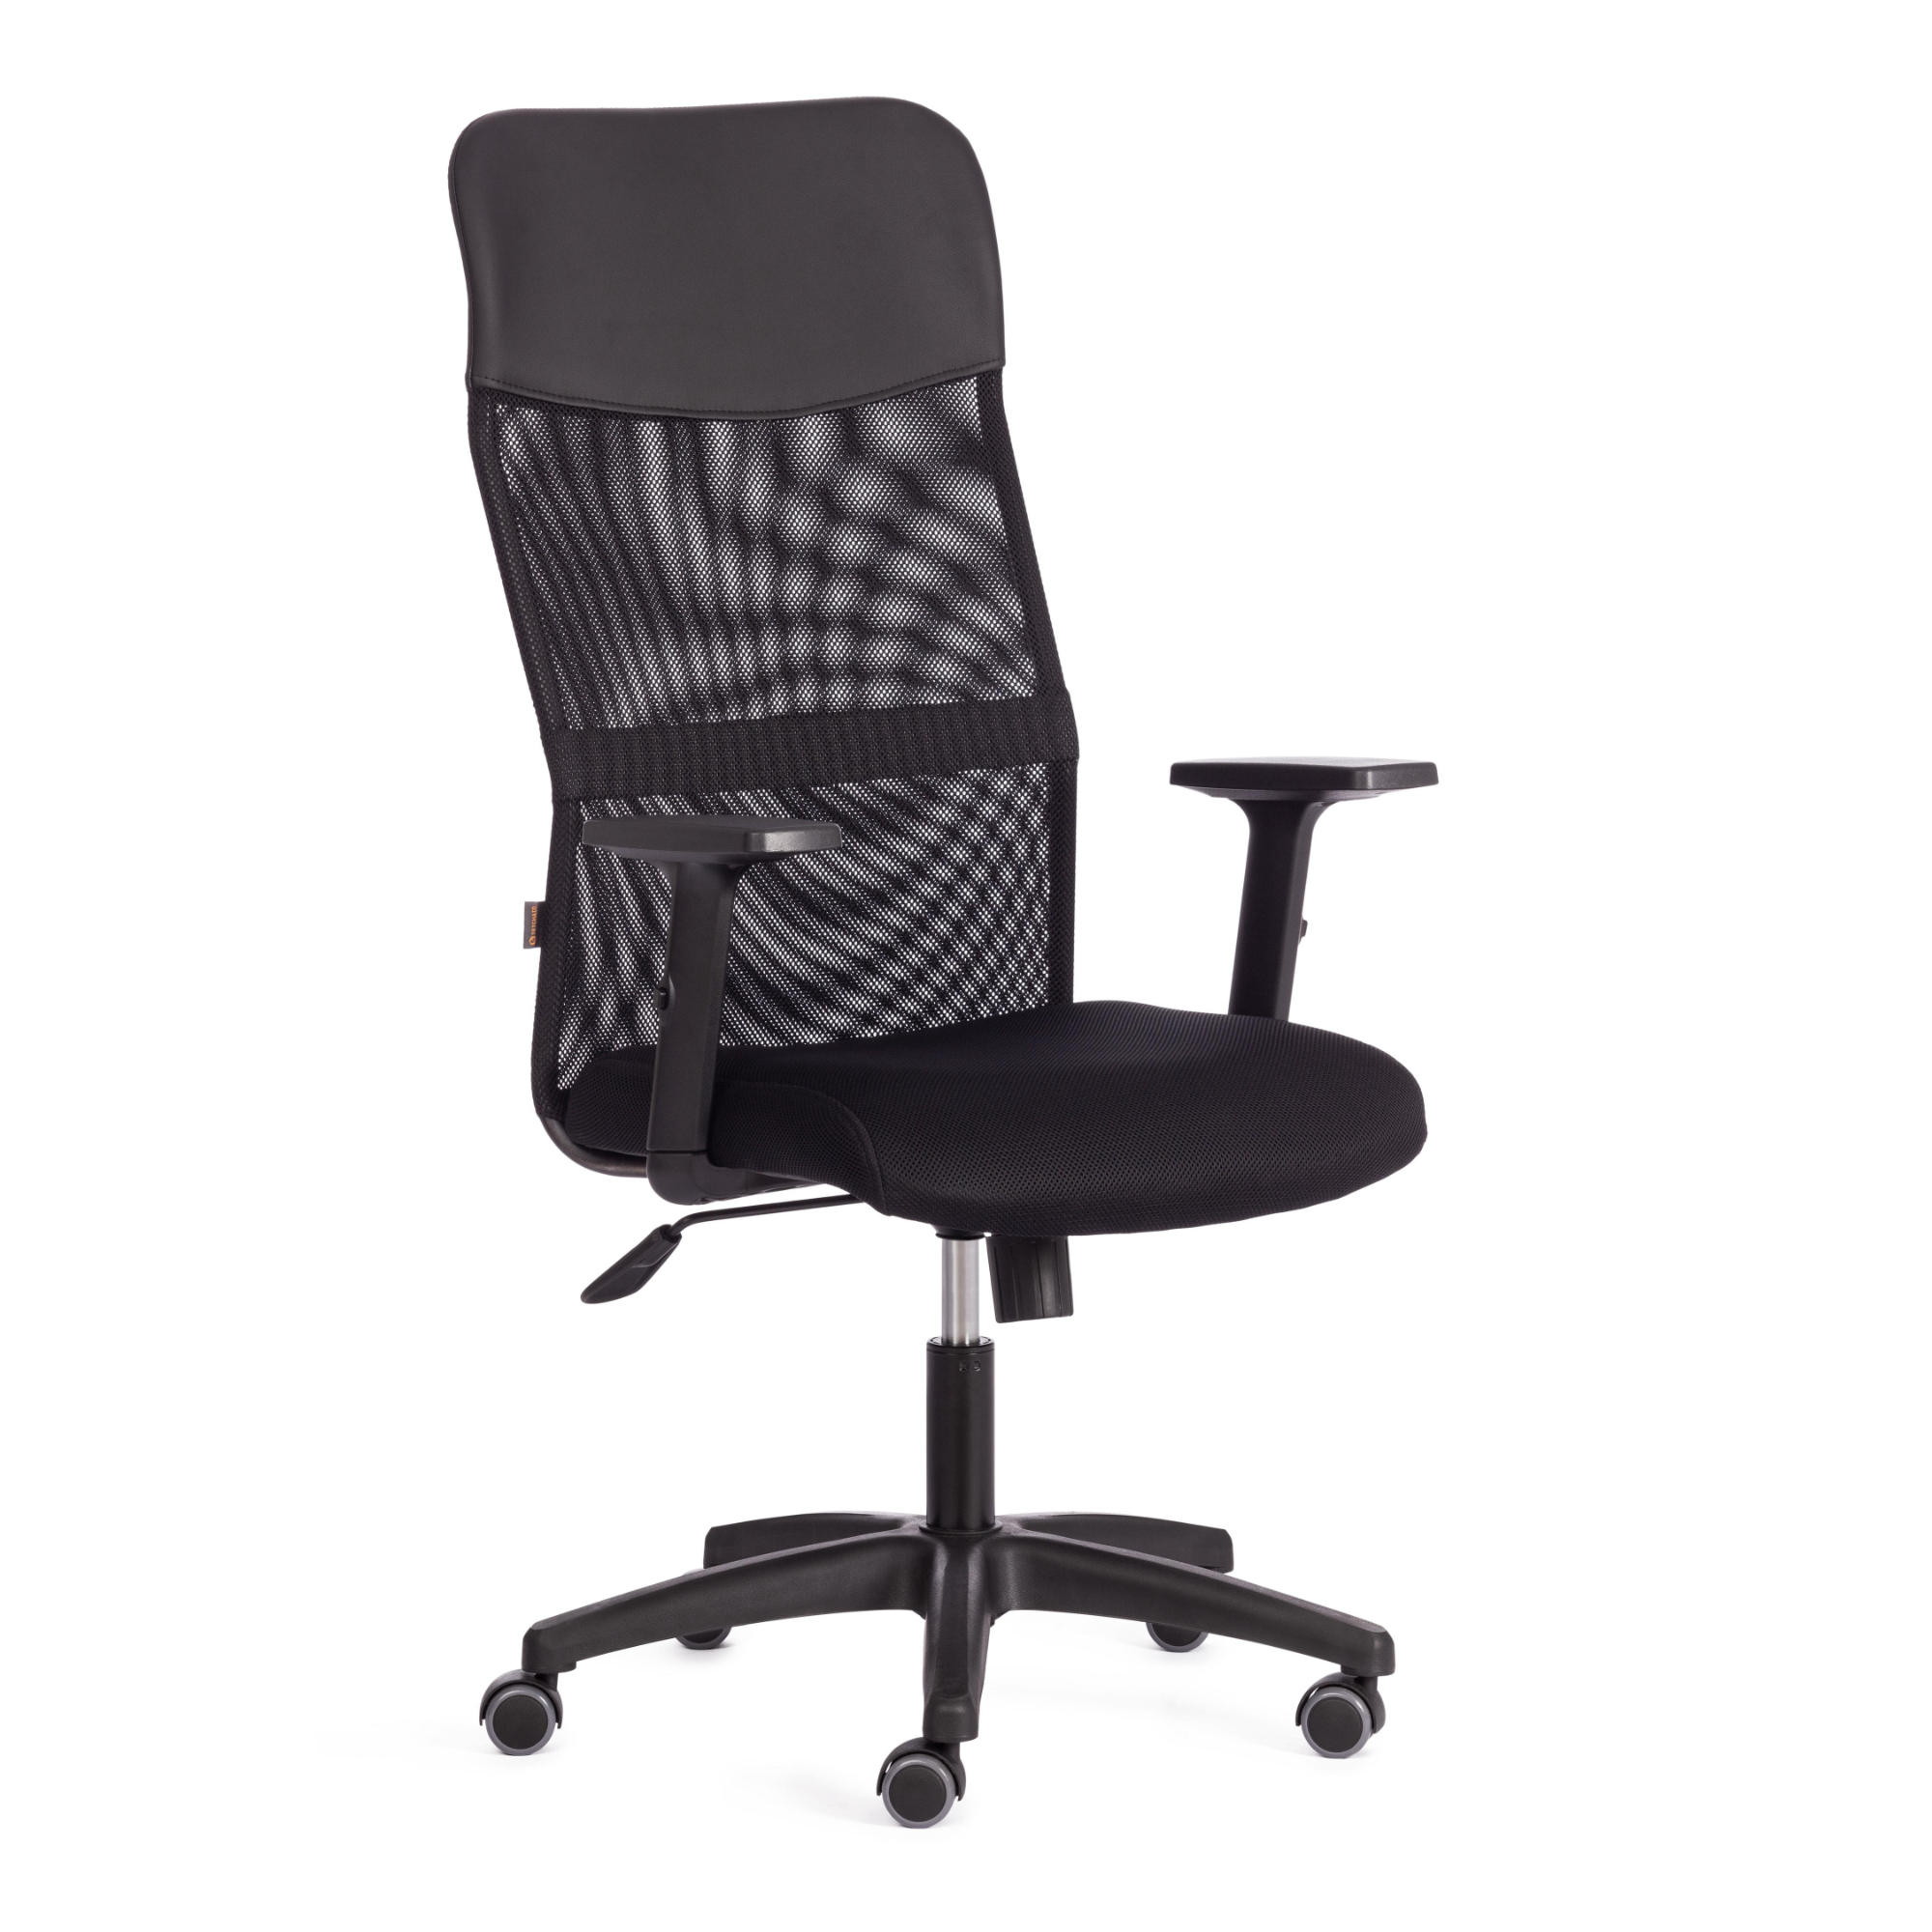 Кресло ТС Practic PLT 36-6 черное офисное кресло ch 1399 сетка синяя искусственная кожа синяя